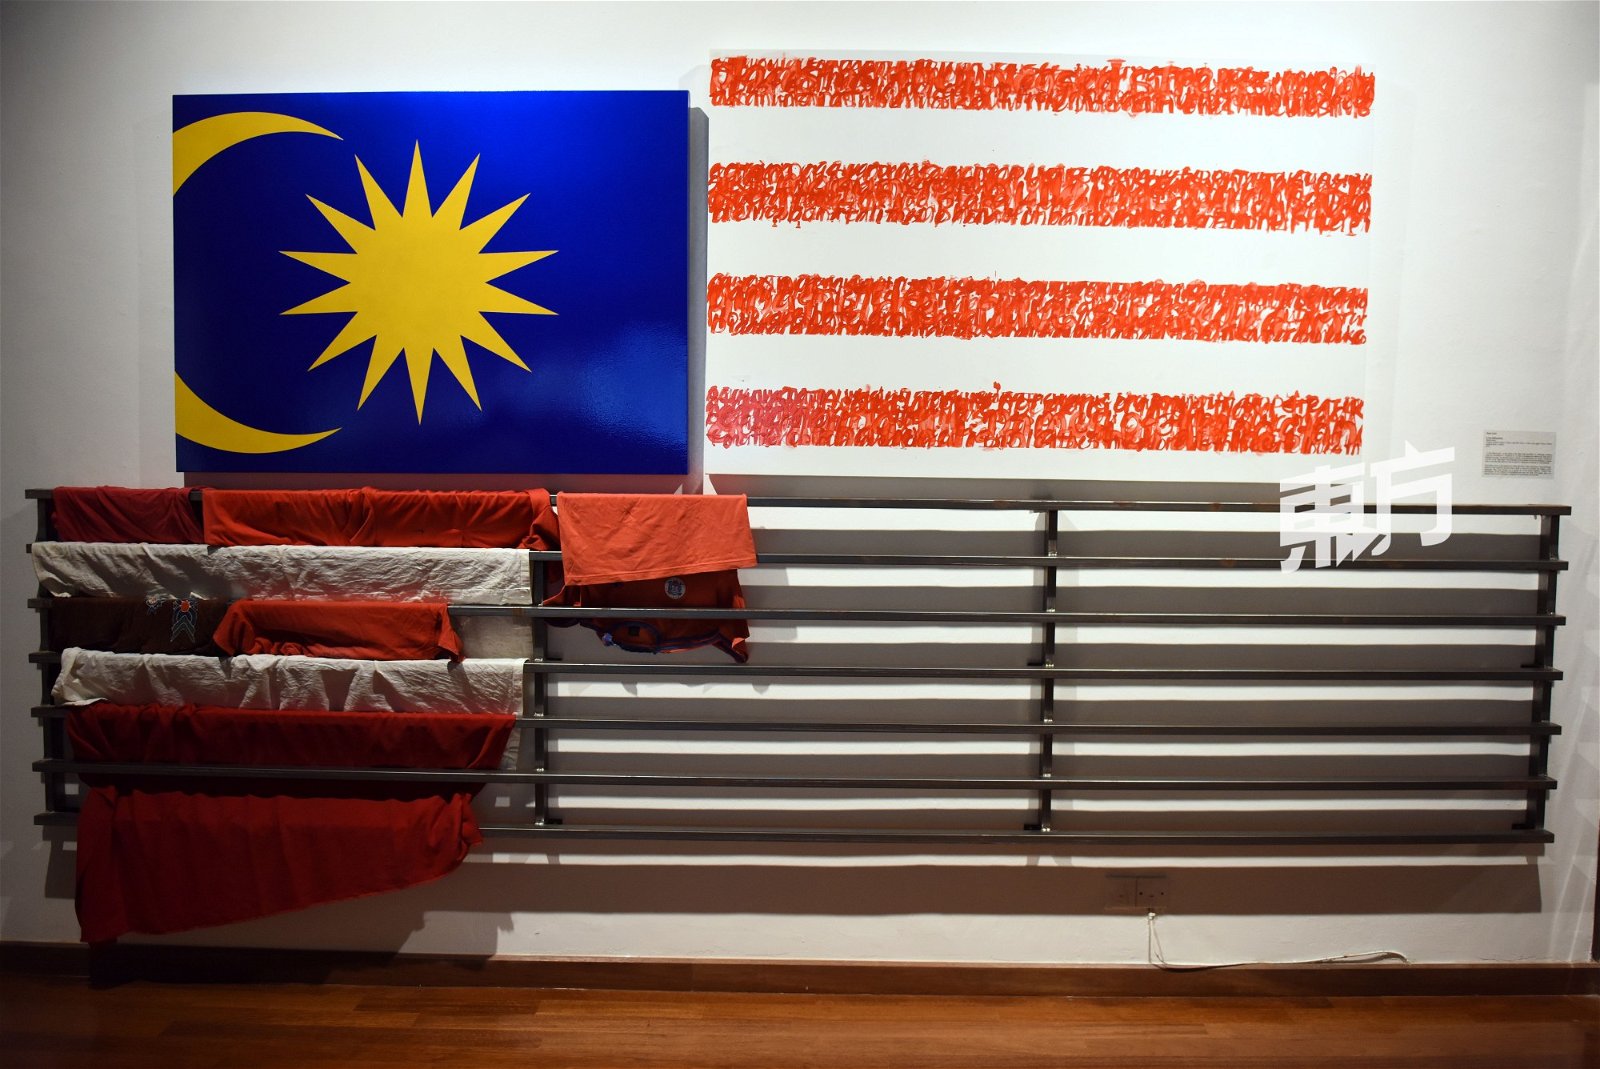 这是取名“A Few Malaysia(s)”的互动装置，作者Sean Lean邀请身穿红色或白色衣服的观展者把衣服留下，共同完成这面旗，惟，碍于观展者几乎都没有携带额外的衣服，所以作品目前仍处于未完成状态。